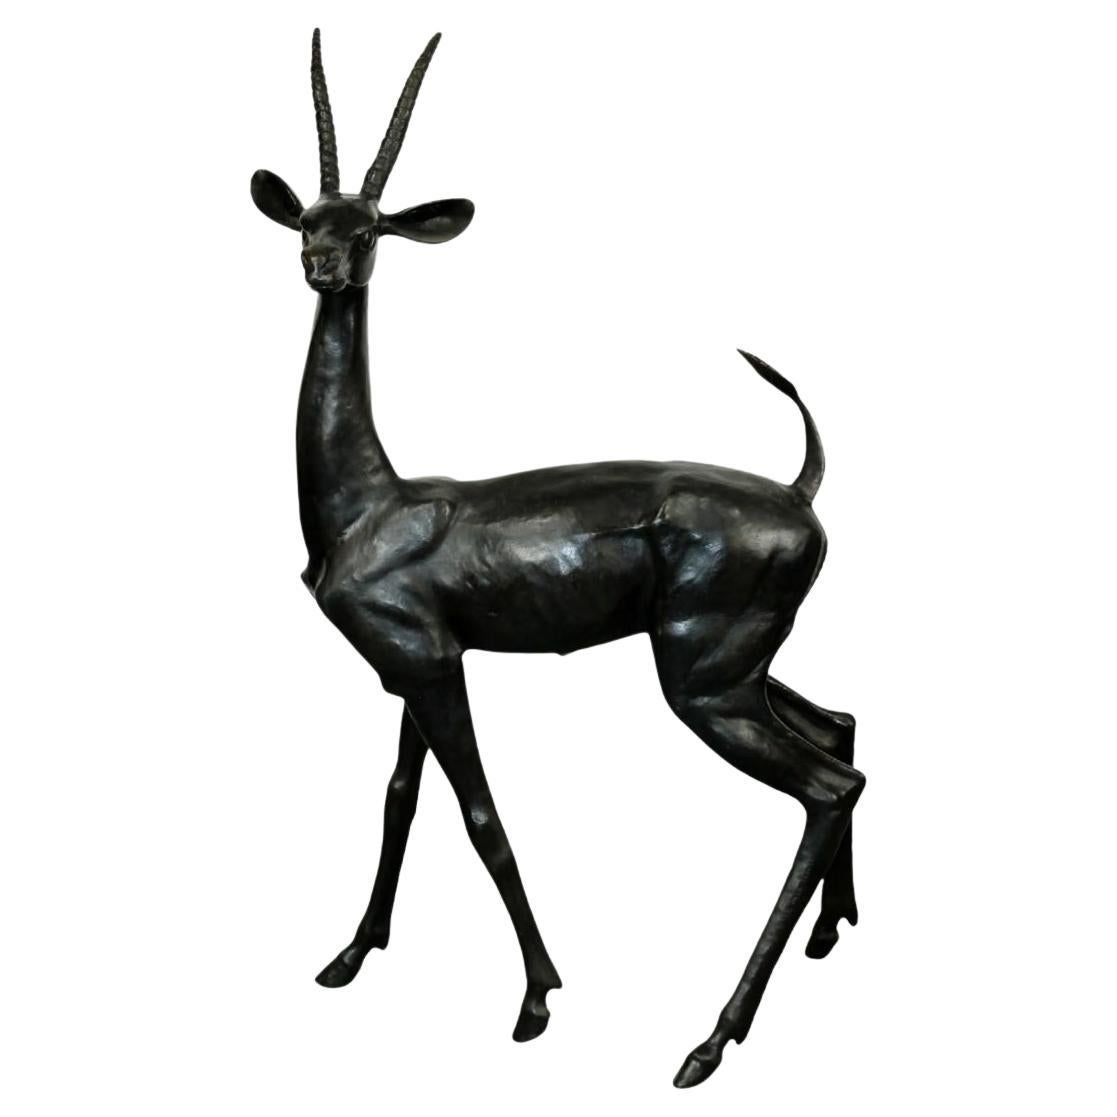 Impressive Bronze Gazelle Sculpture by Max Turner, Signed, 1976 For Sale